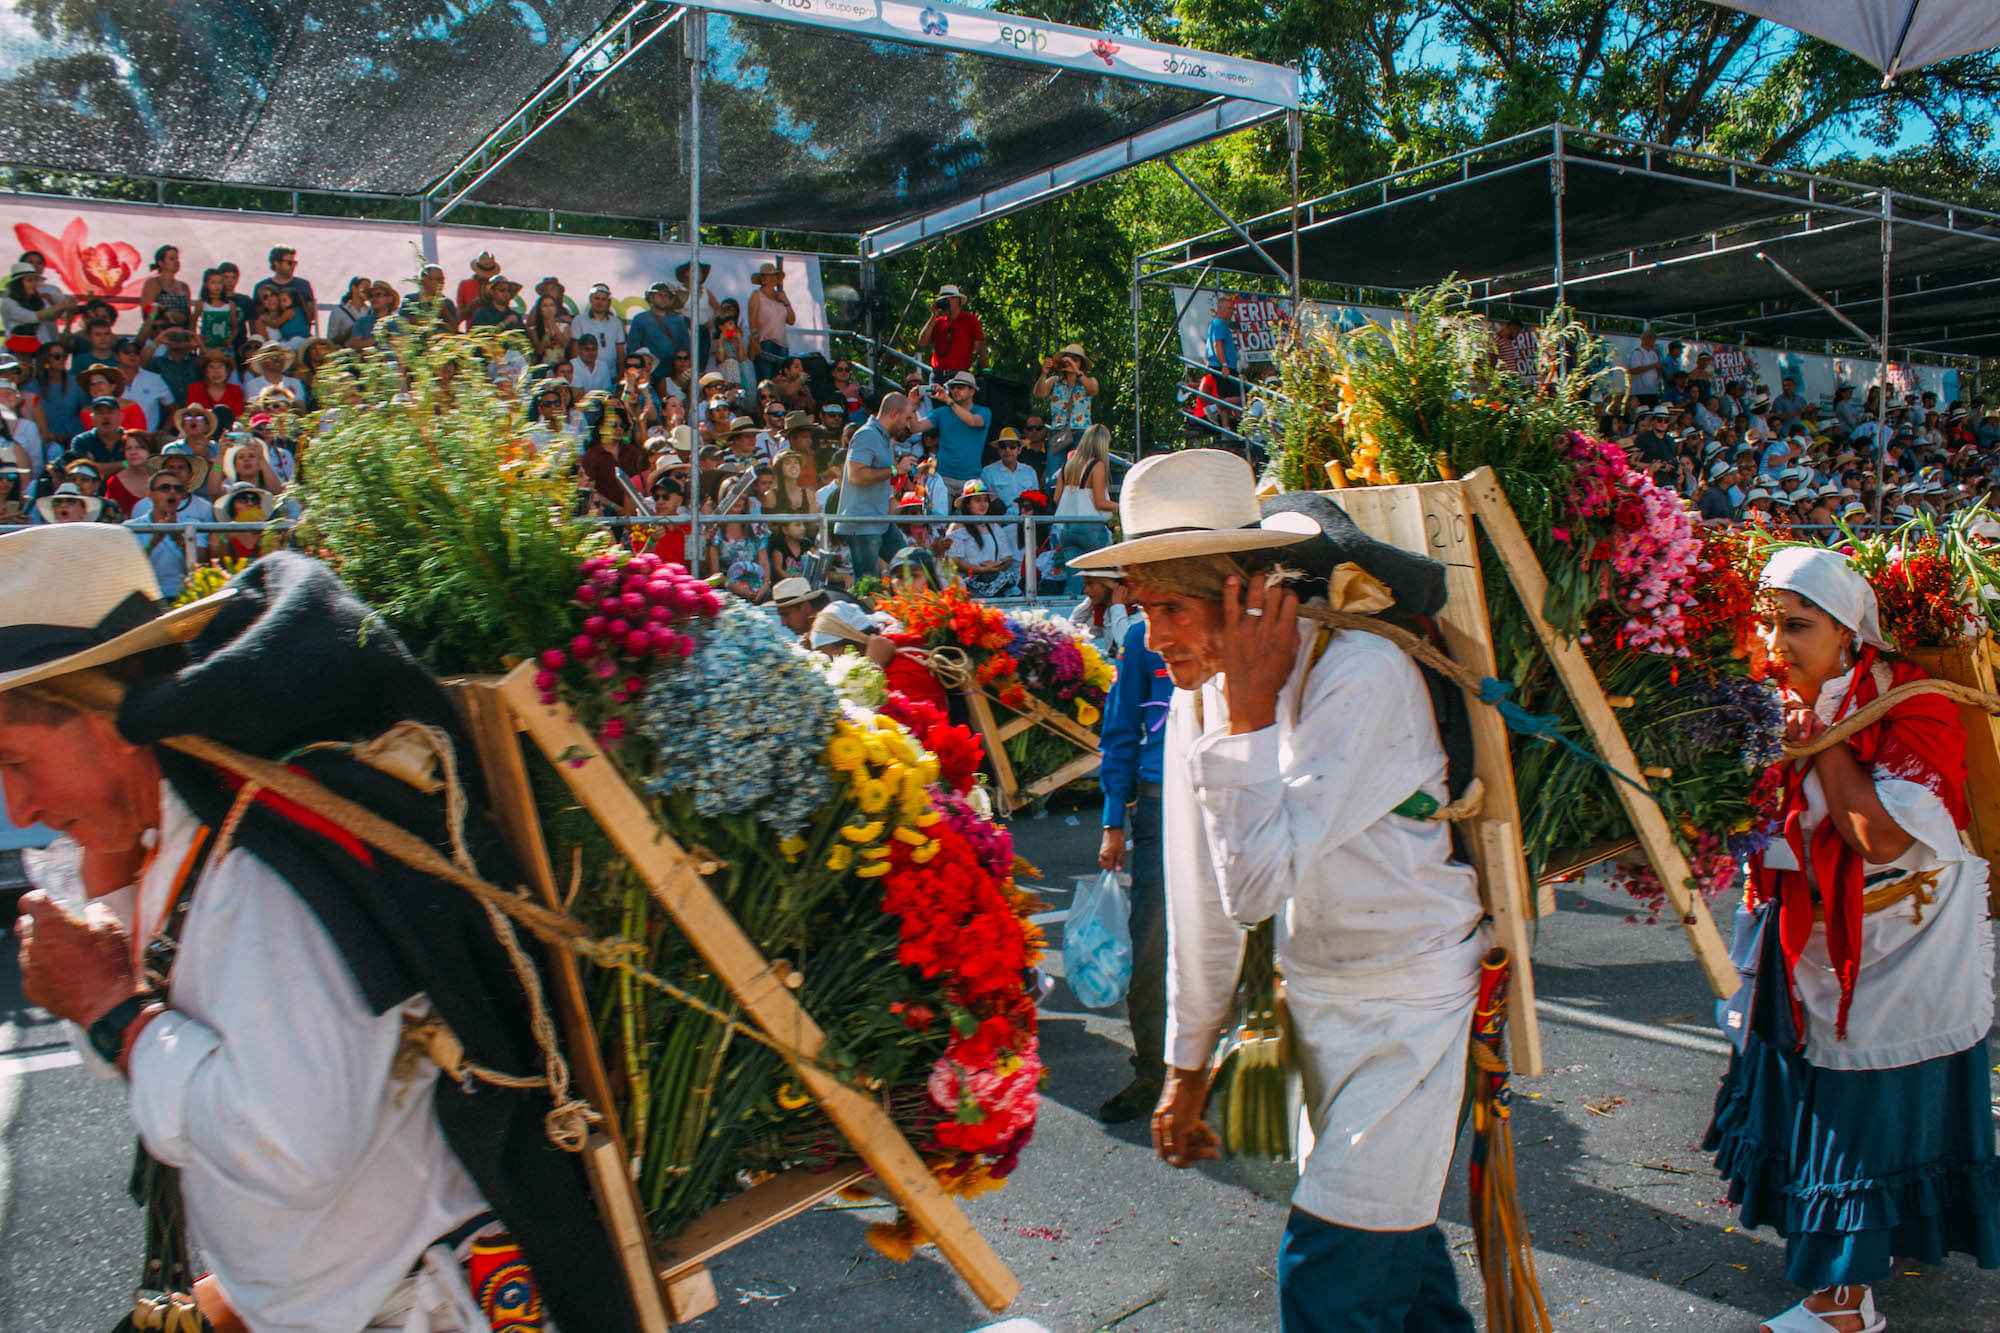 Feria de las flores medellin, Wanderluluu, Festival of flowers medellin, Medellin Colombia, Colombia flower festival, Colombia, Medellin, Best festivals in Colombia, when to visit Colombia